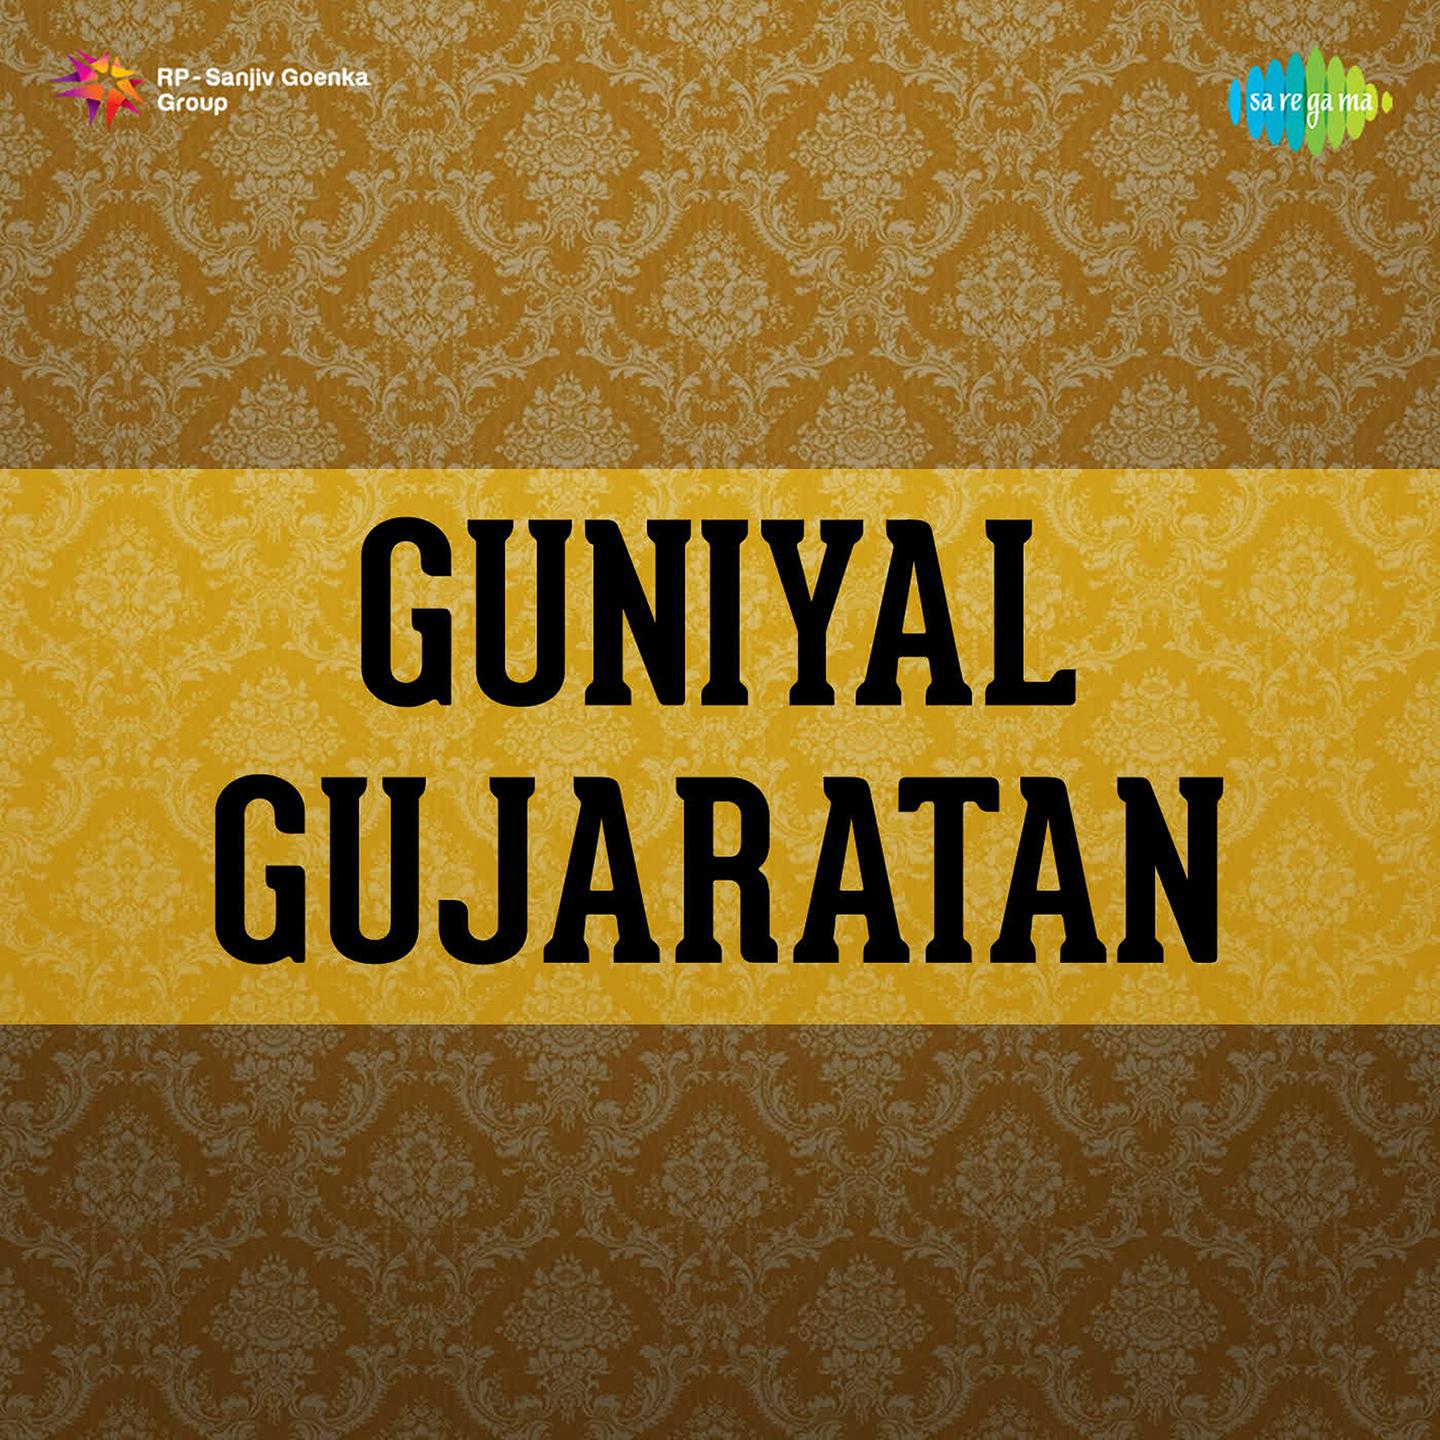 Guniyal Gujaratan